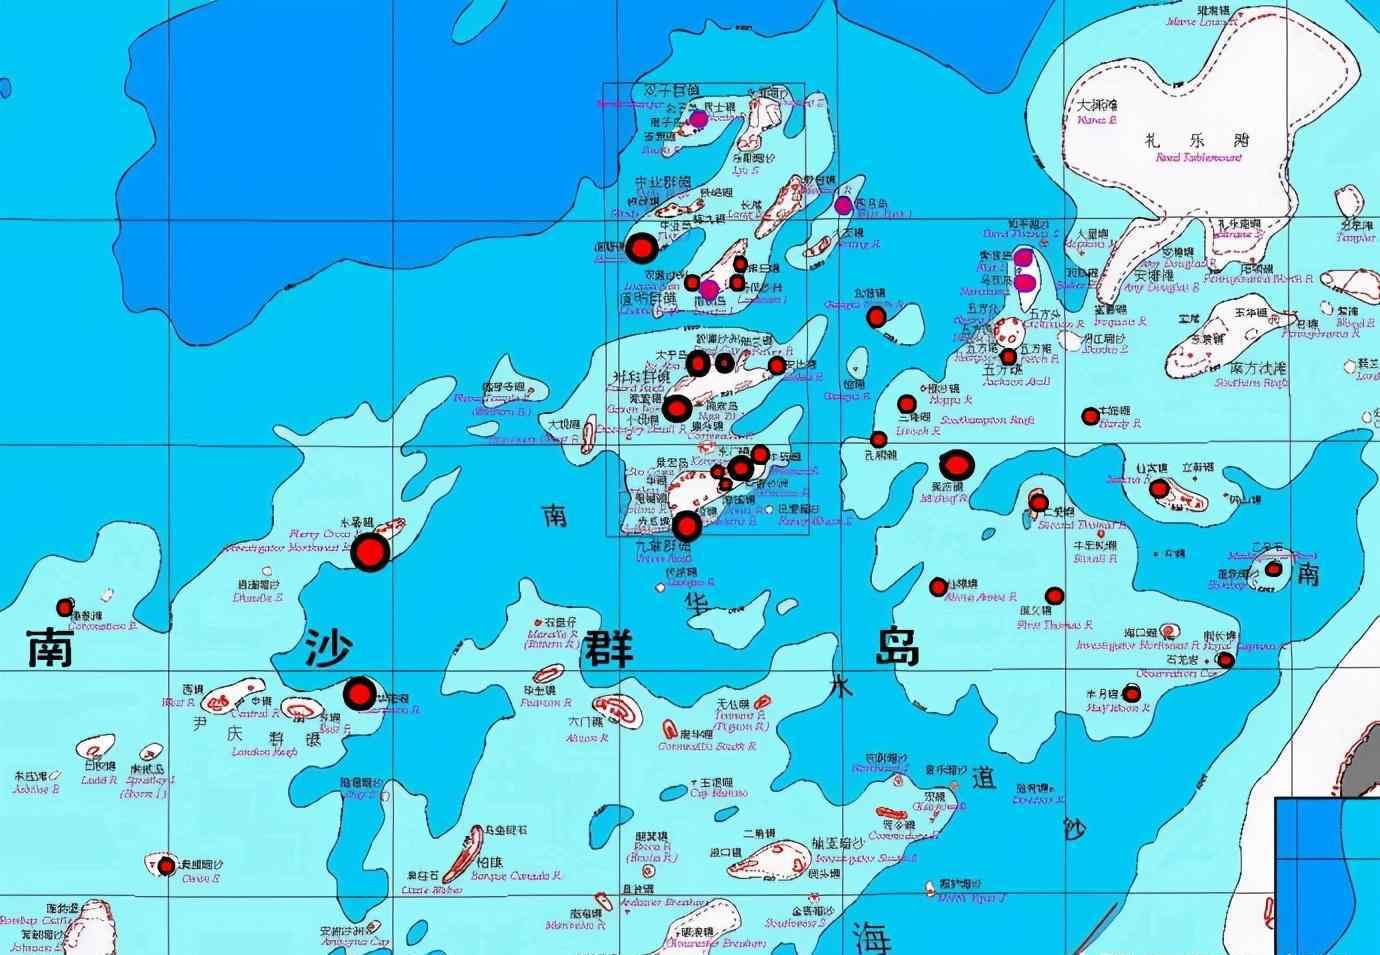 南海岛屿实际控制图 中国实际控制南海多少岛礁？这个数字很有参考价值